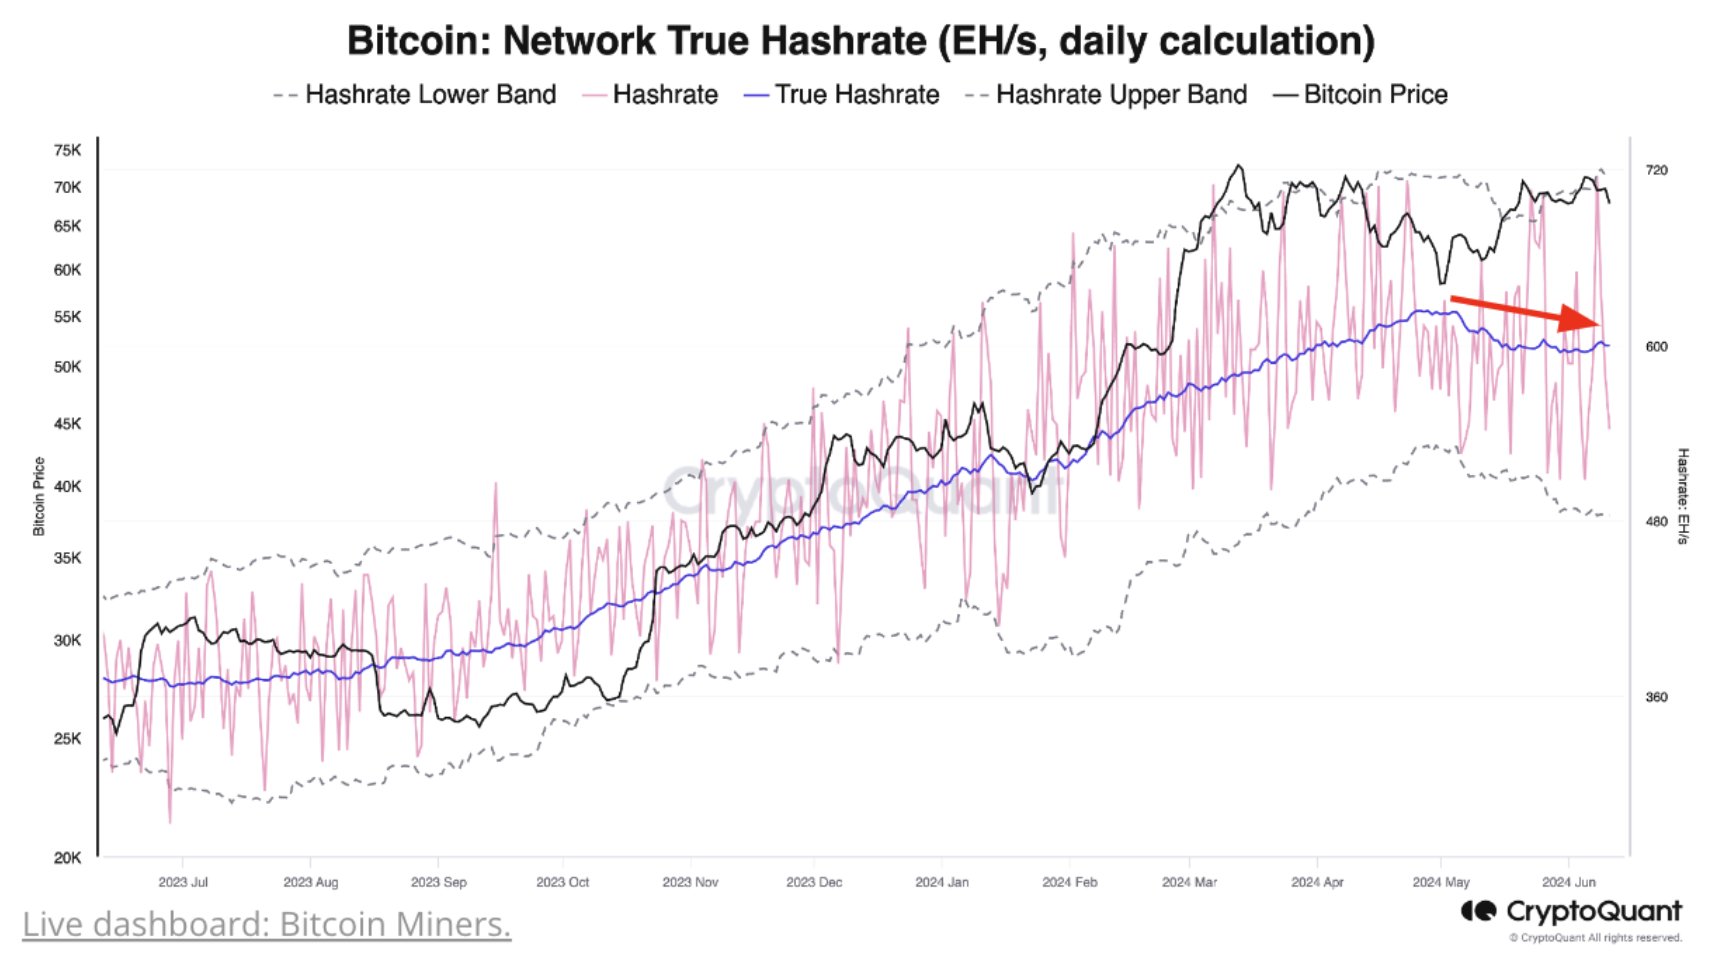 Bitcoin phá vỡ xu hướng tăng Hashrate kéo dài 18 tháng. Các thợ đào Bitcoin đang chịu đầu hàng không?